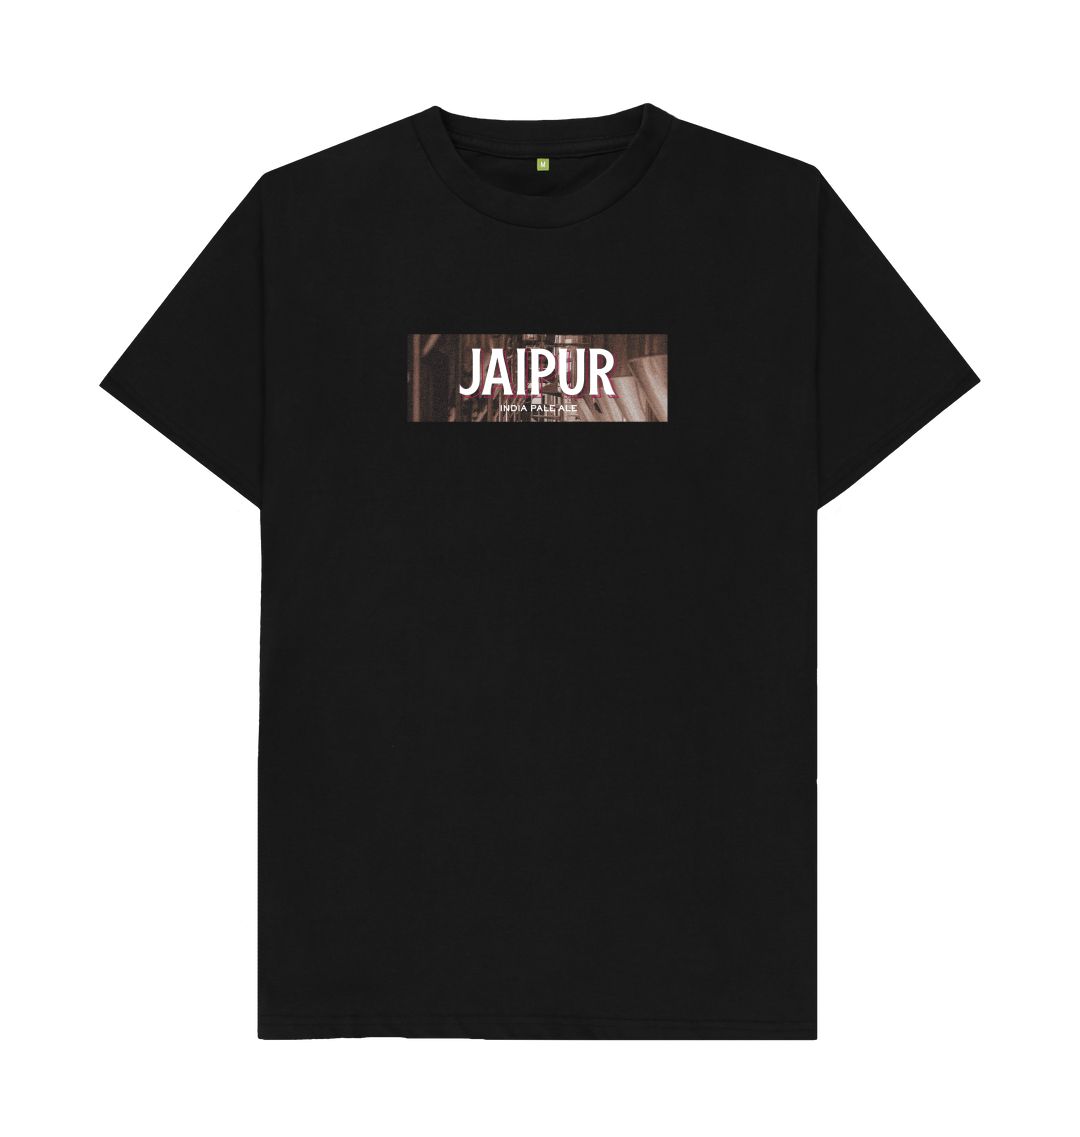 Jaipur boxed logo t shirt Printed T-shirt Thornbridge